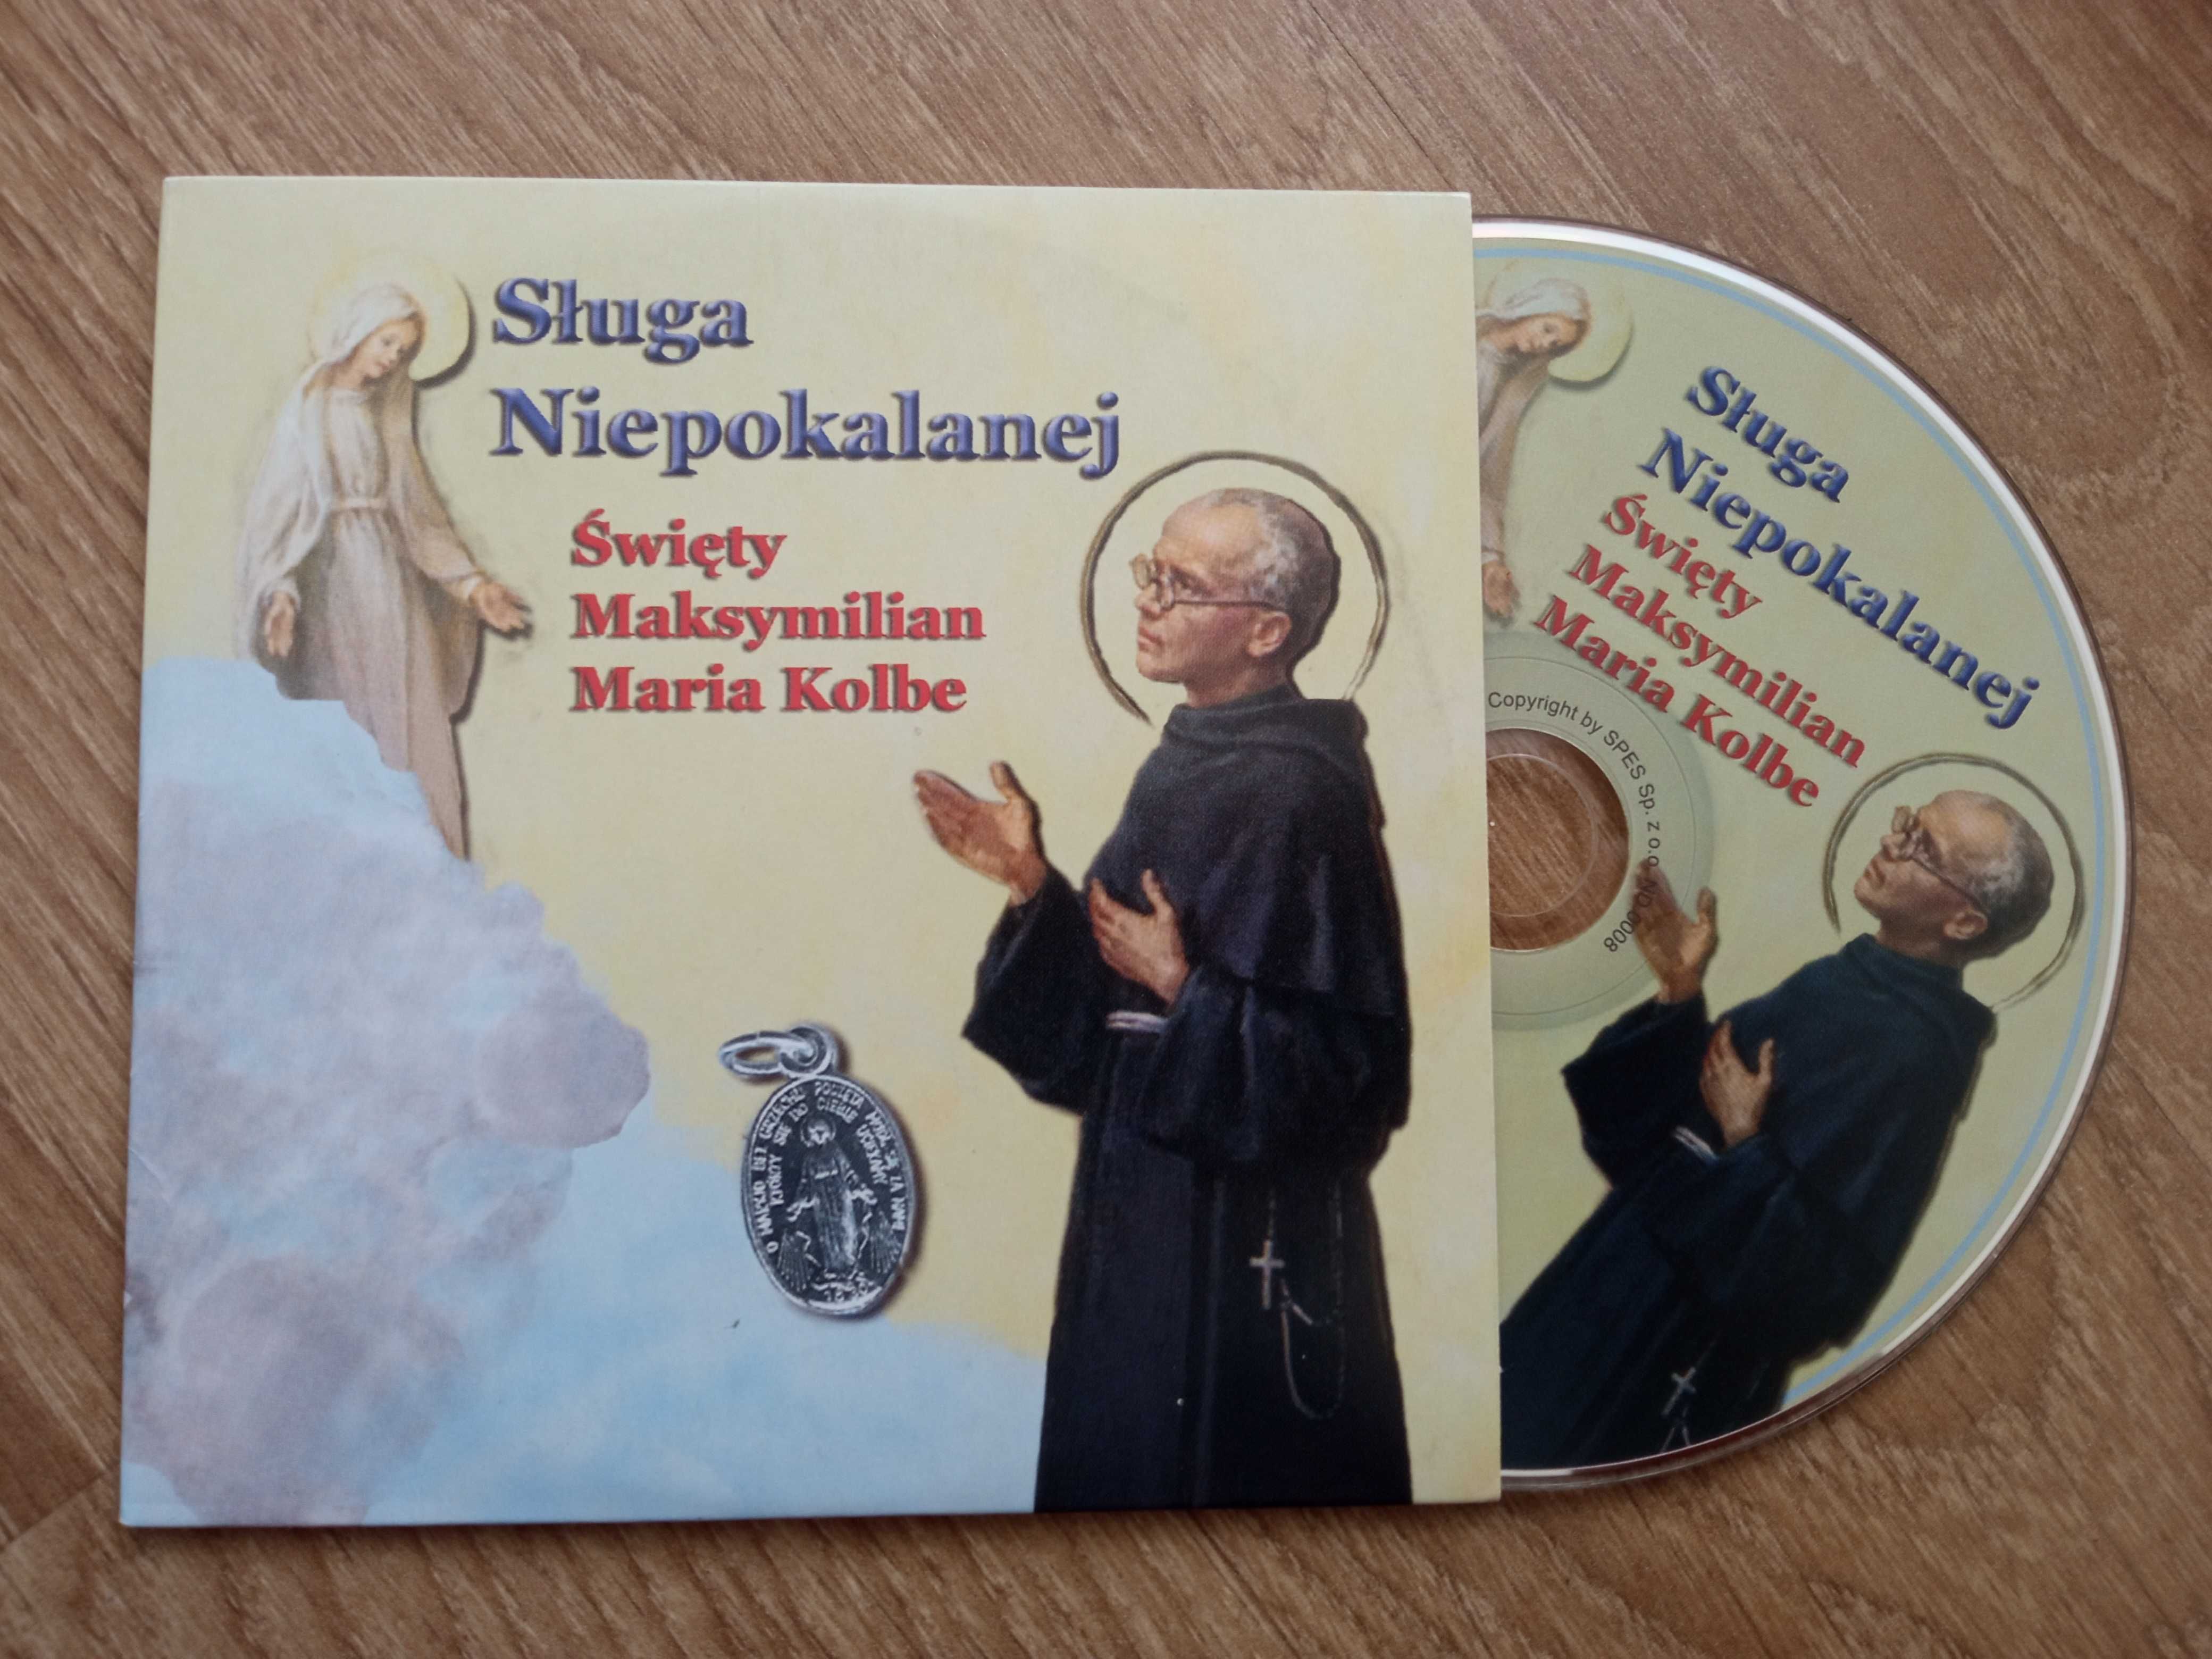 Sługa Niepokalanej Święty Maksymilian Kolbe Audycja Płyta CD